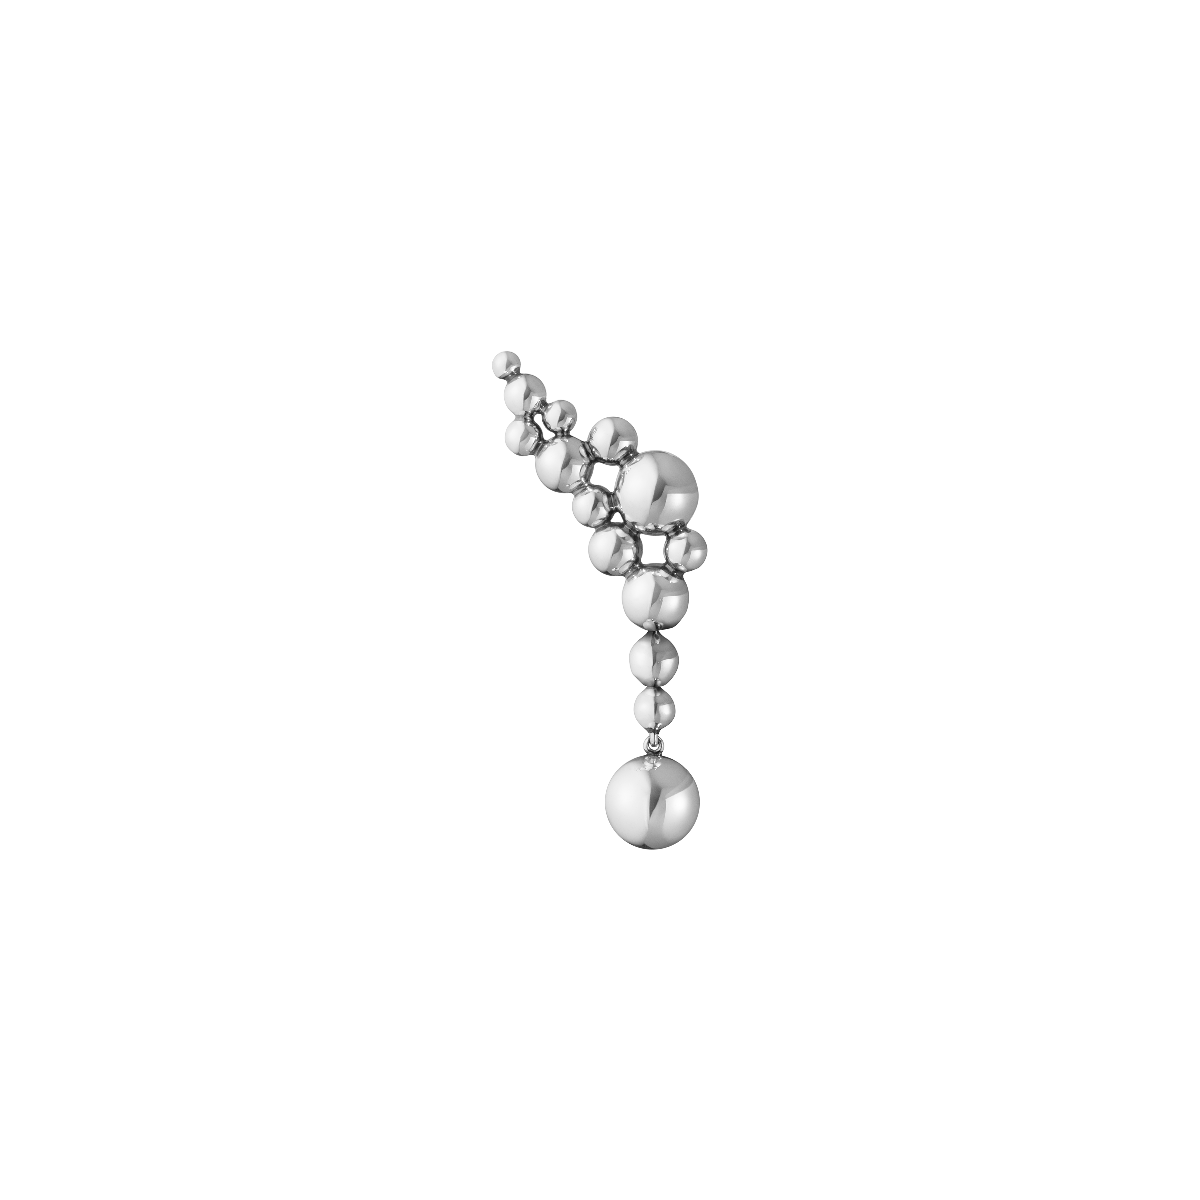 Moonlight Grapes ørering - oxideret sølv fra Georg Jensen